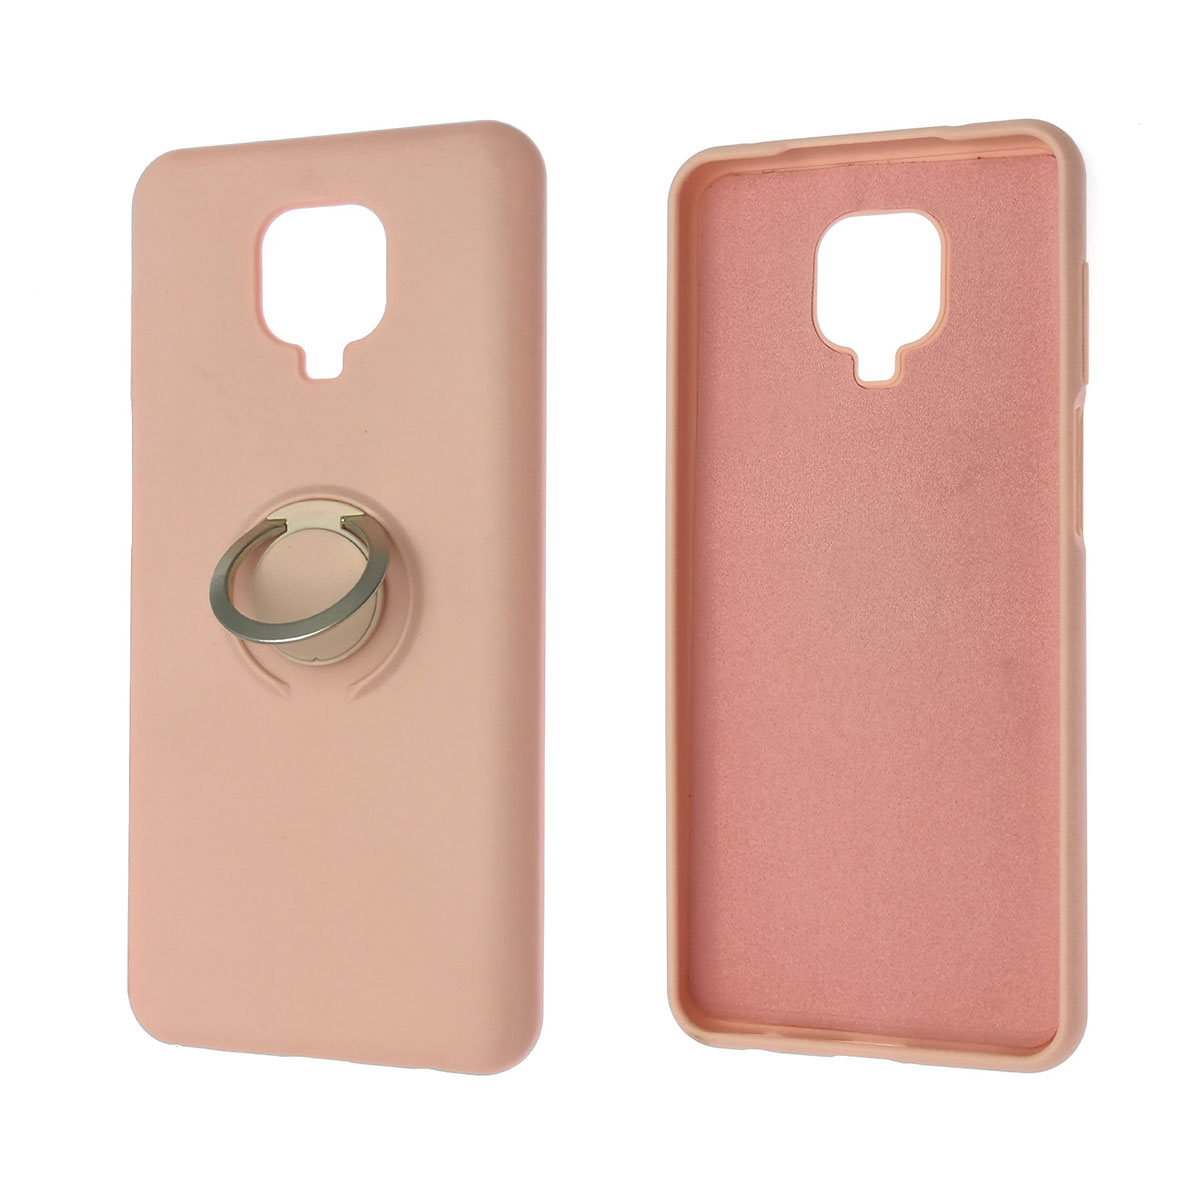 Чехол накладка RING для XIAOMI Redmi Note 9 Pro, Redmi Note 9S, силикон, кольцо держатель, цвет розовый песок.